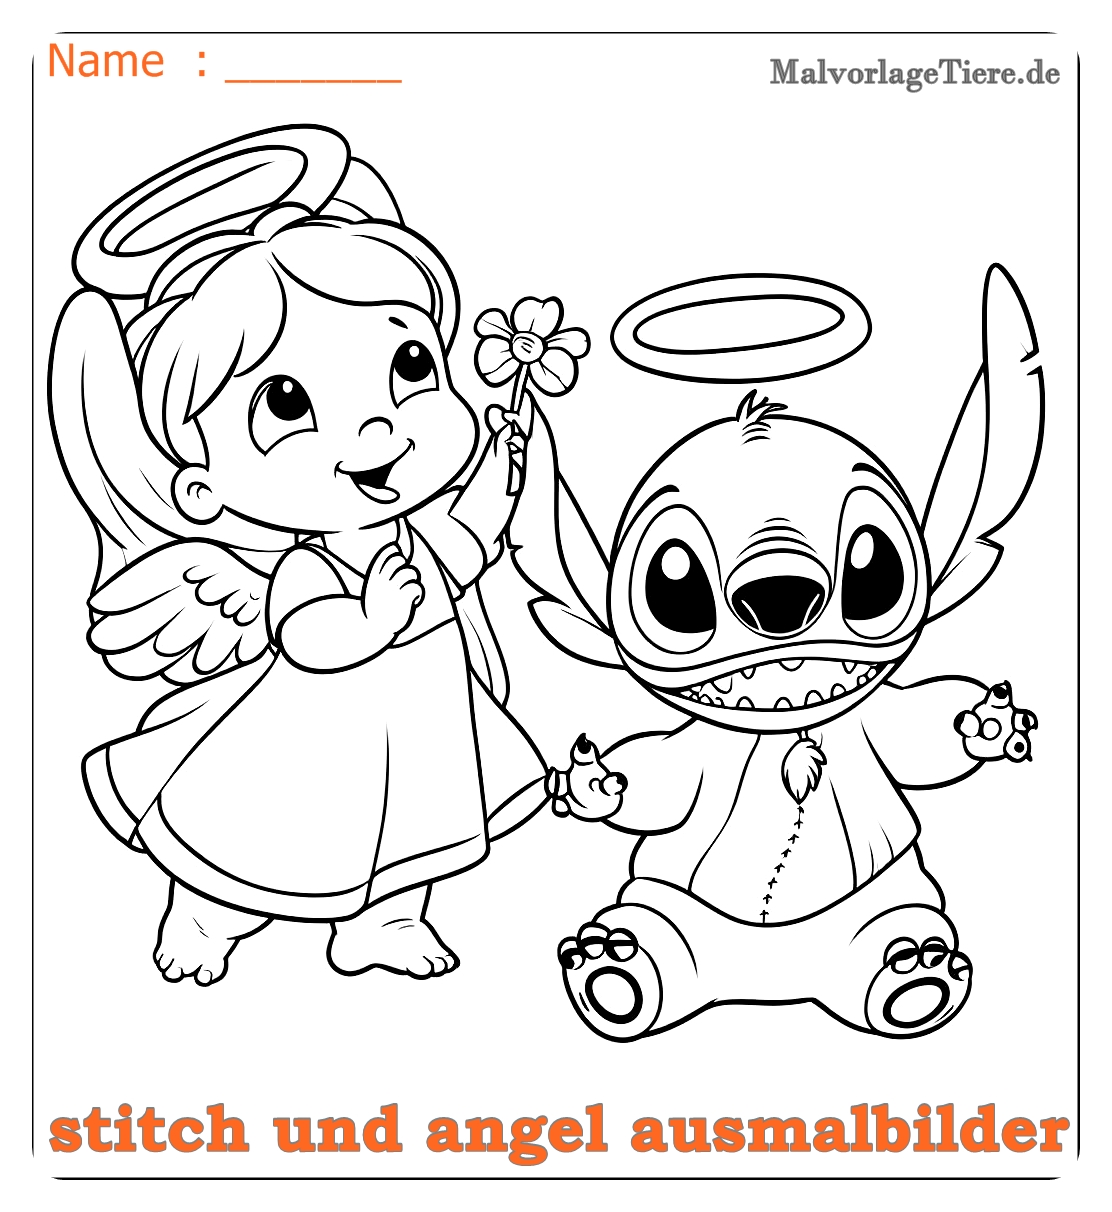 stitch und angel ausmalbilder04 by malvorlagetiere.de